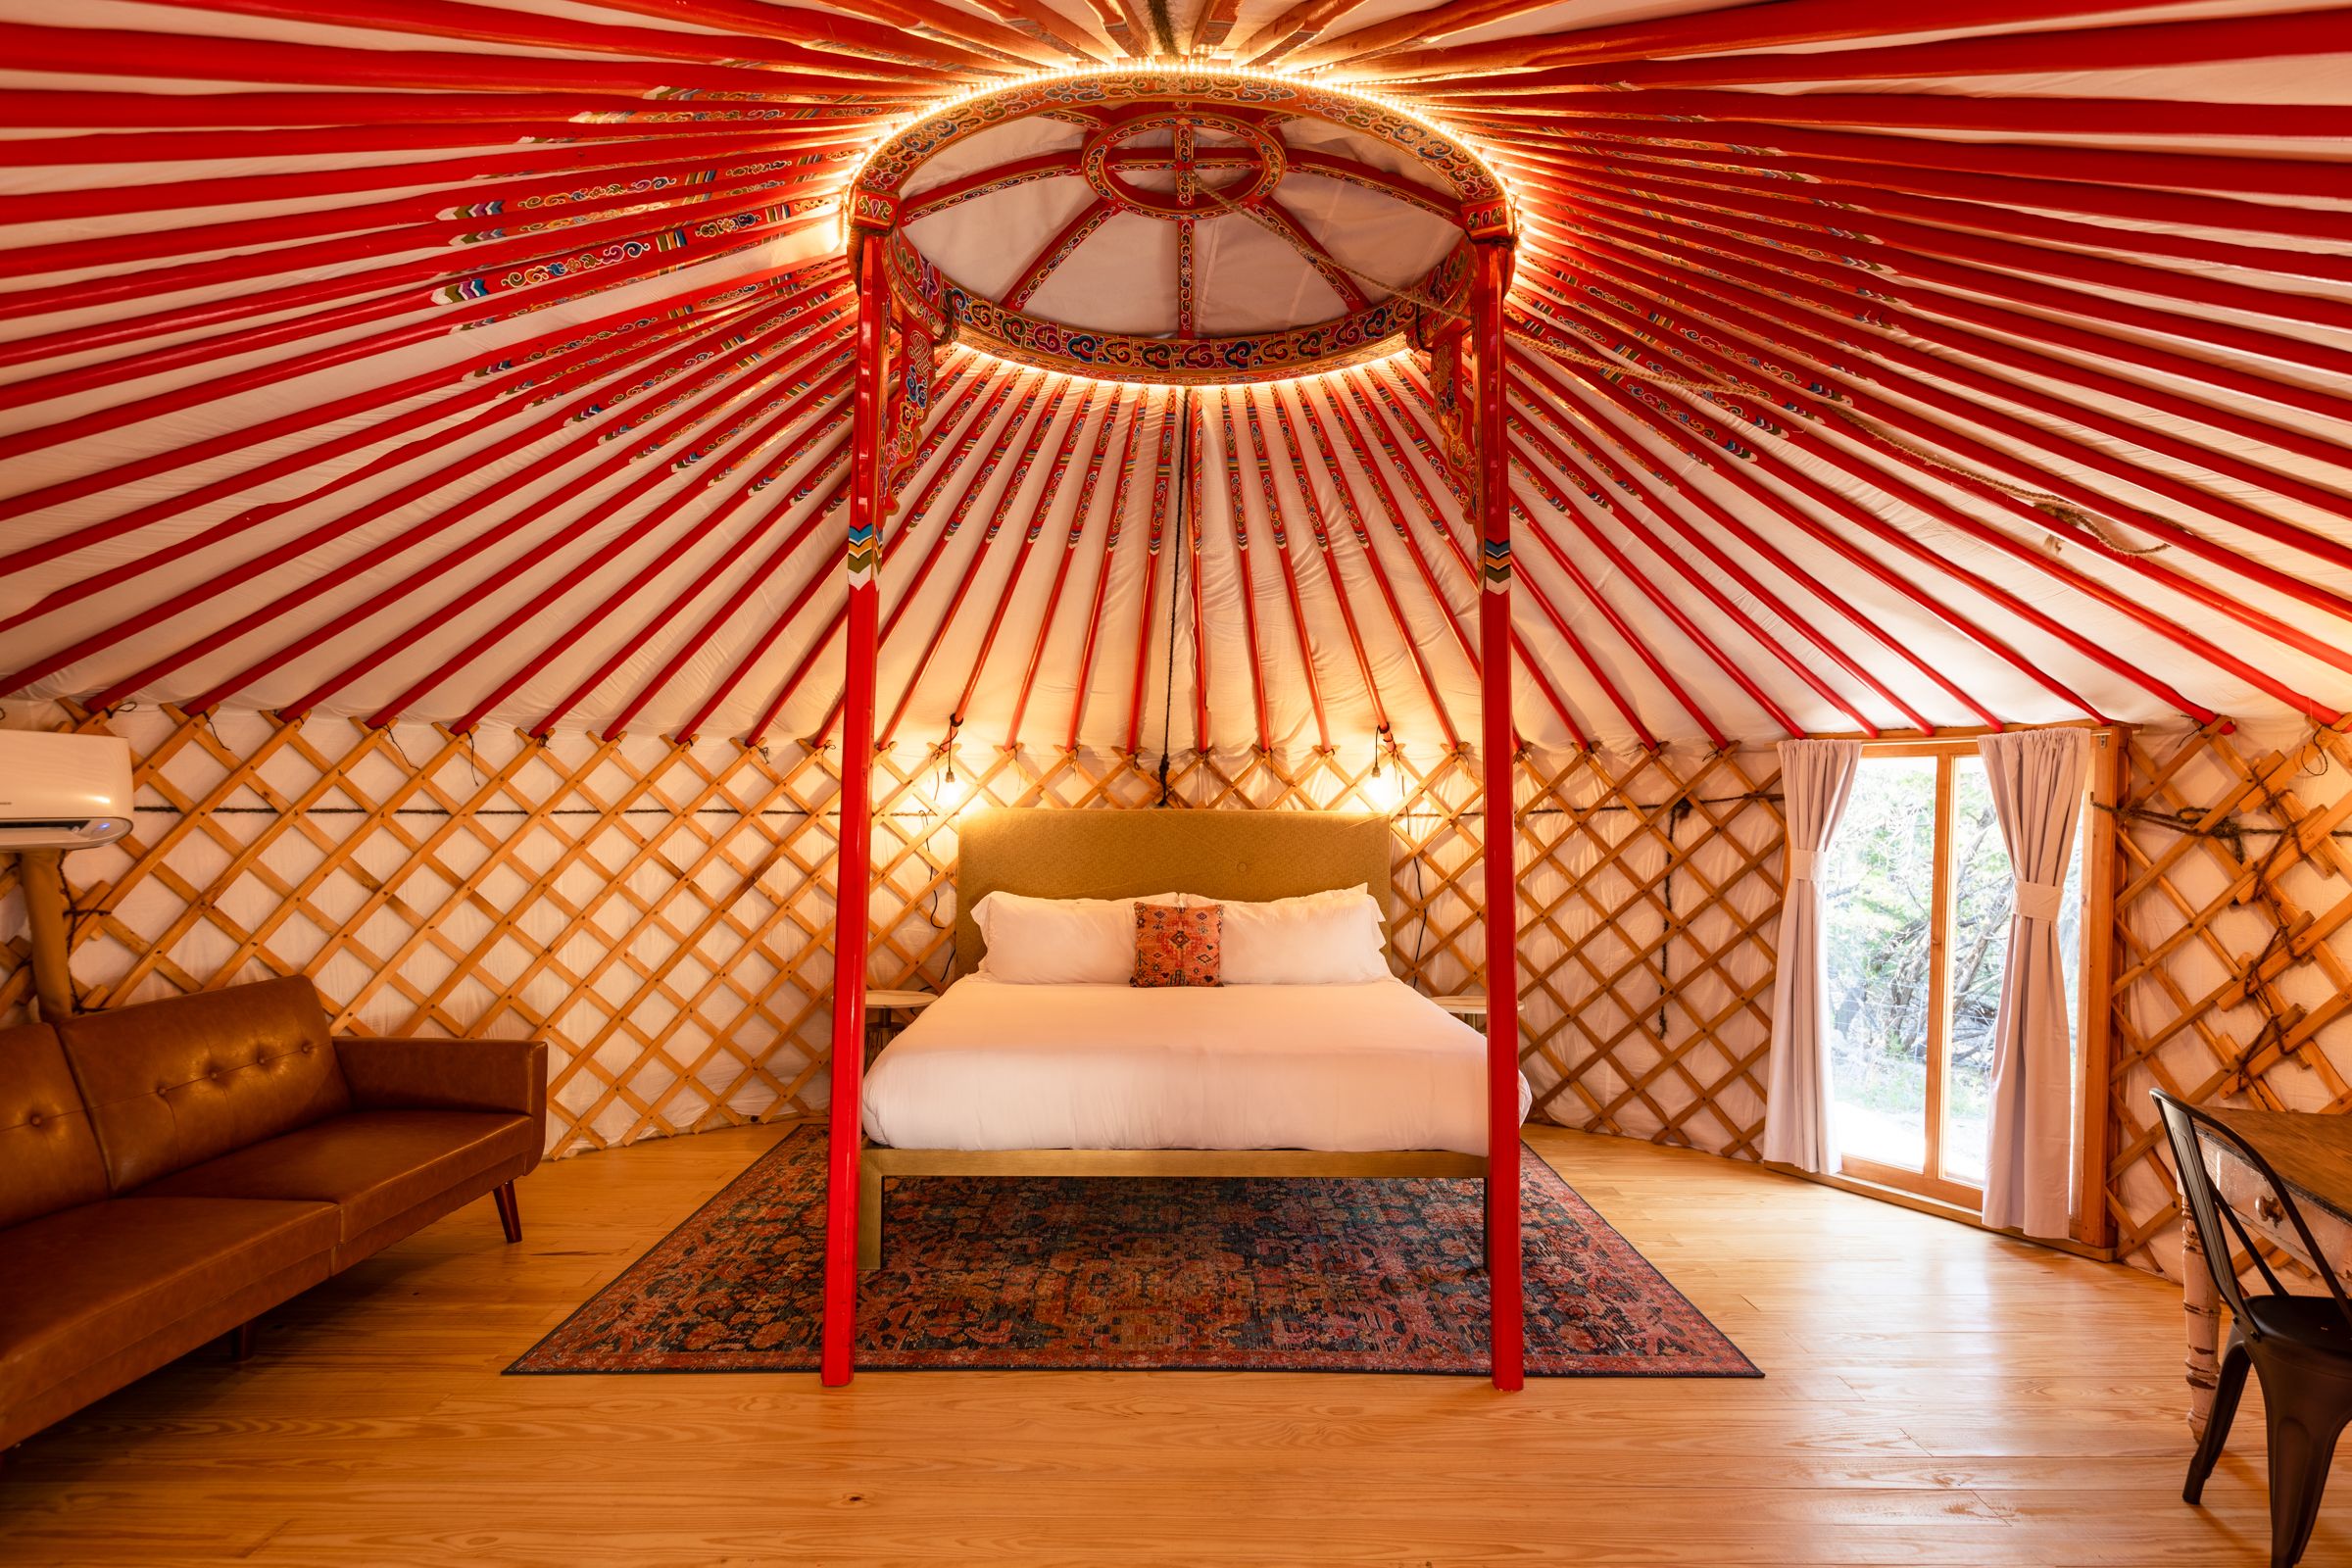 interior bedroom view of yurt